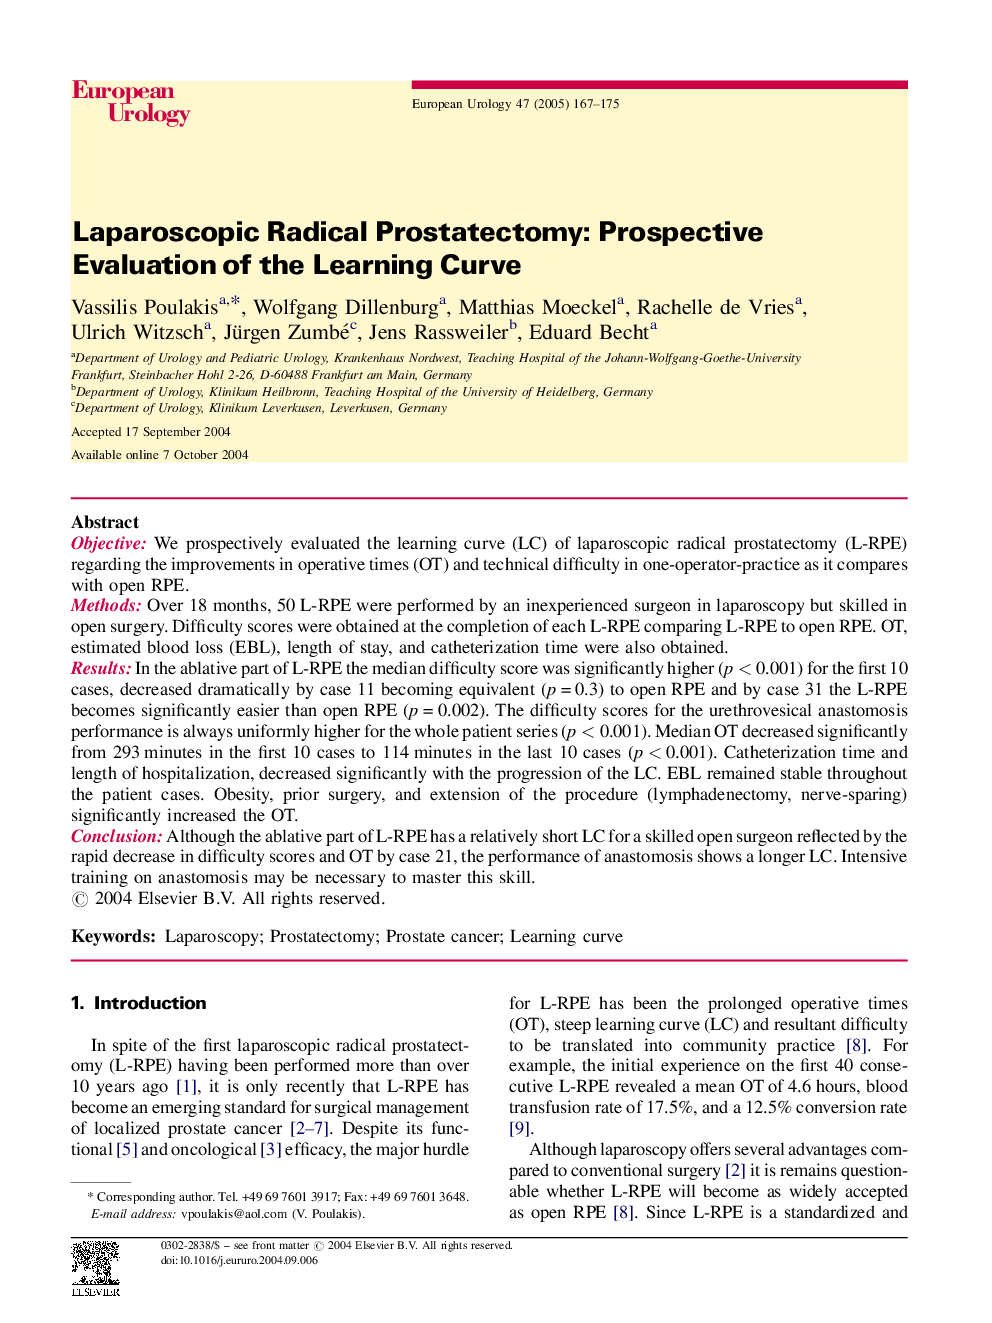 Laparoscopic Radical Prostatectomy: Prospective Evaluation of the Learning Curve